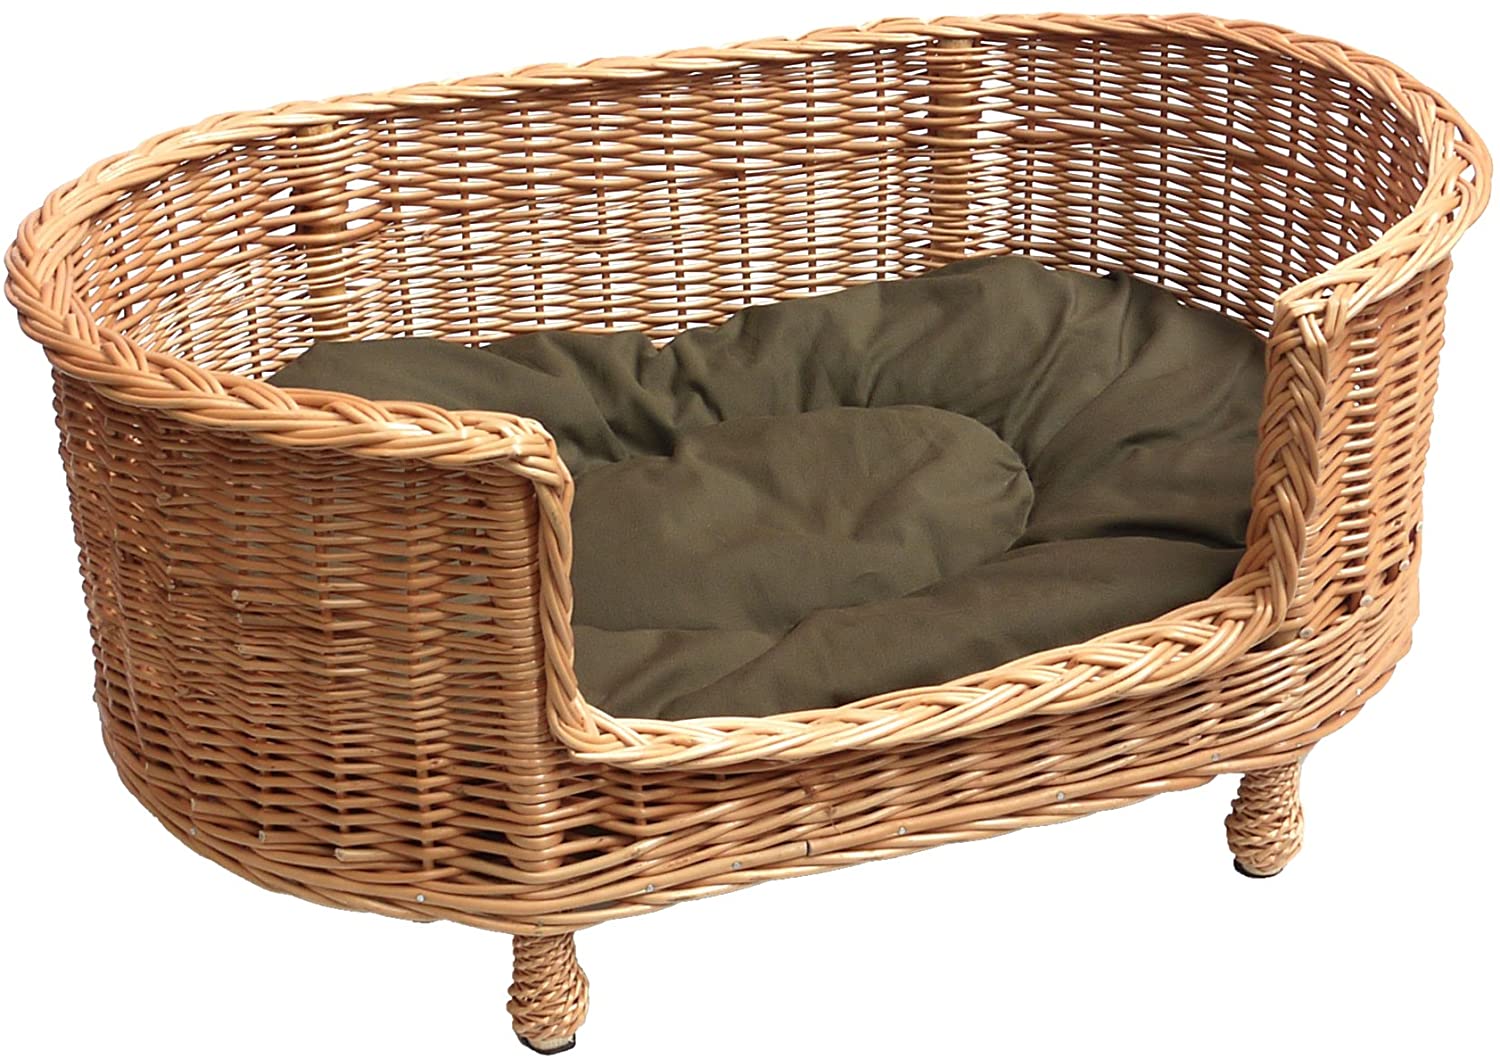 Prestige Wicker Luxury Willow Dog Basket Settee